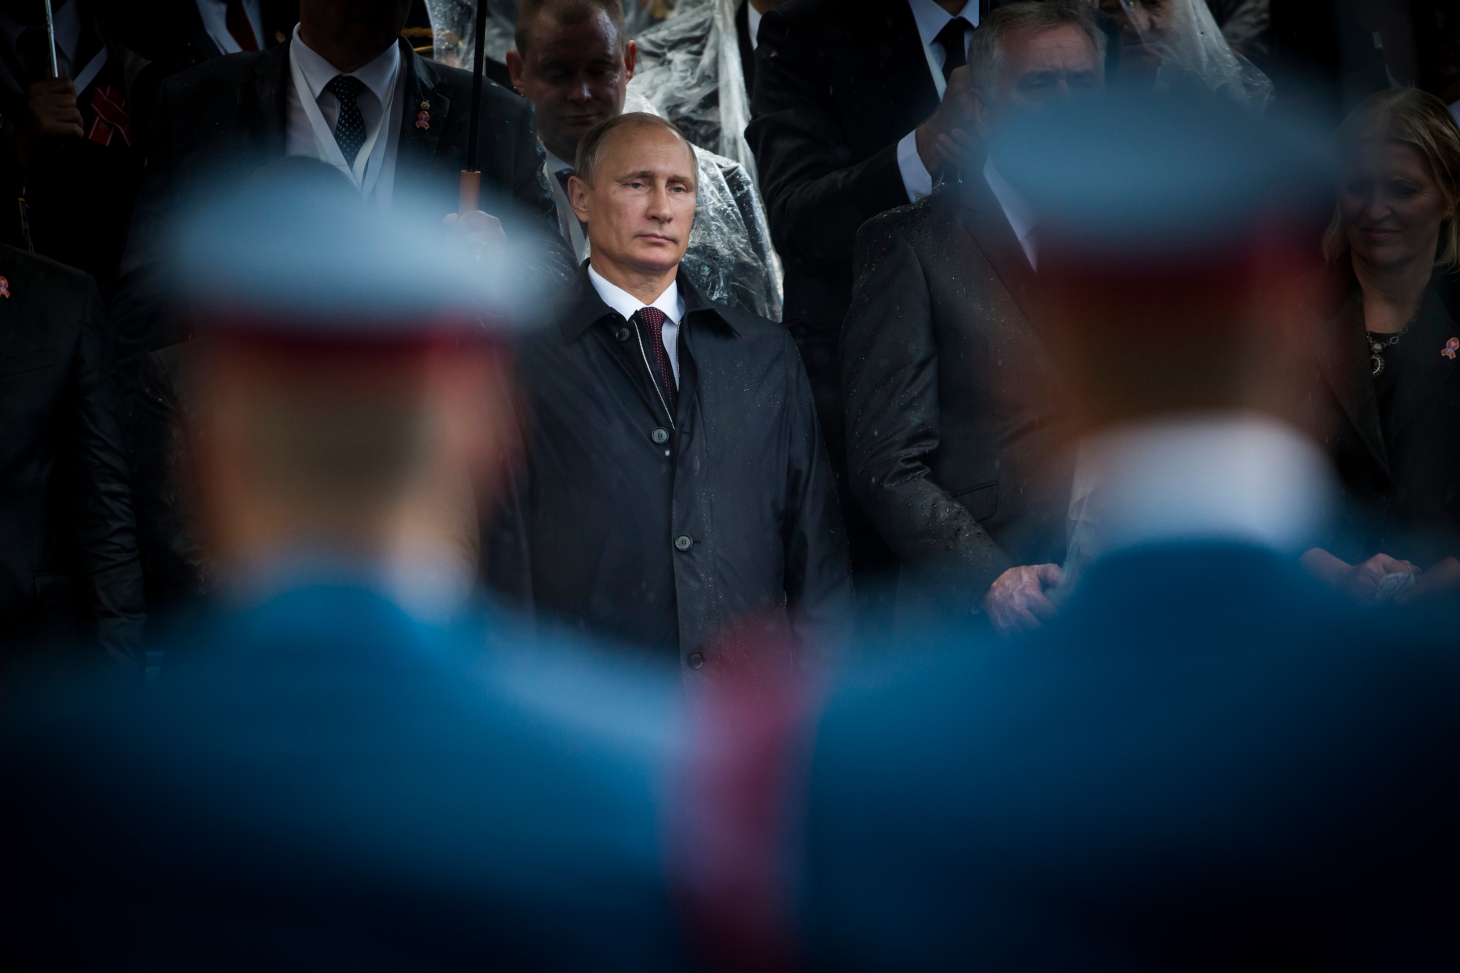 Le 9 mai 2022, jour anniversaire de la fin de la Seconde Guerre mondiale en Russie, Vladimir Poutine prononce un discours établissant un lien direct entre la lutte contre l’hitlérisme et l’« opération militaire spéciale » russe actuelle en Ukraine. Photo 